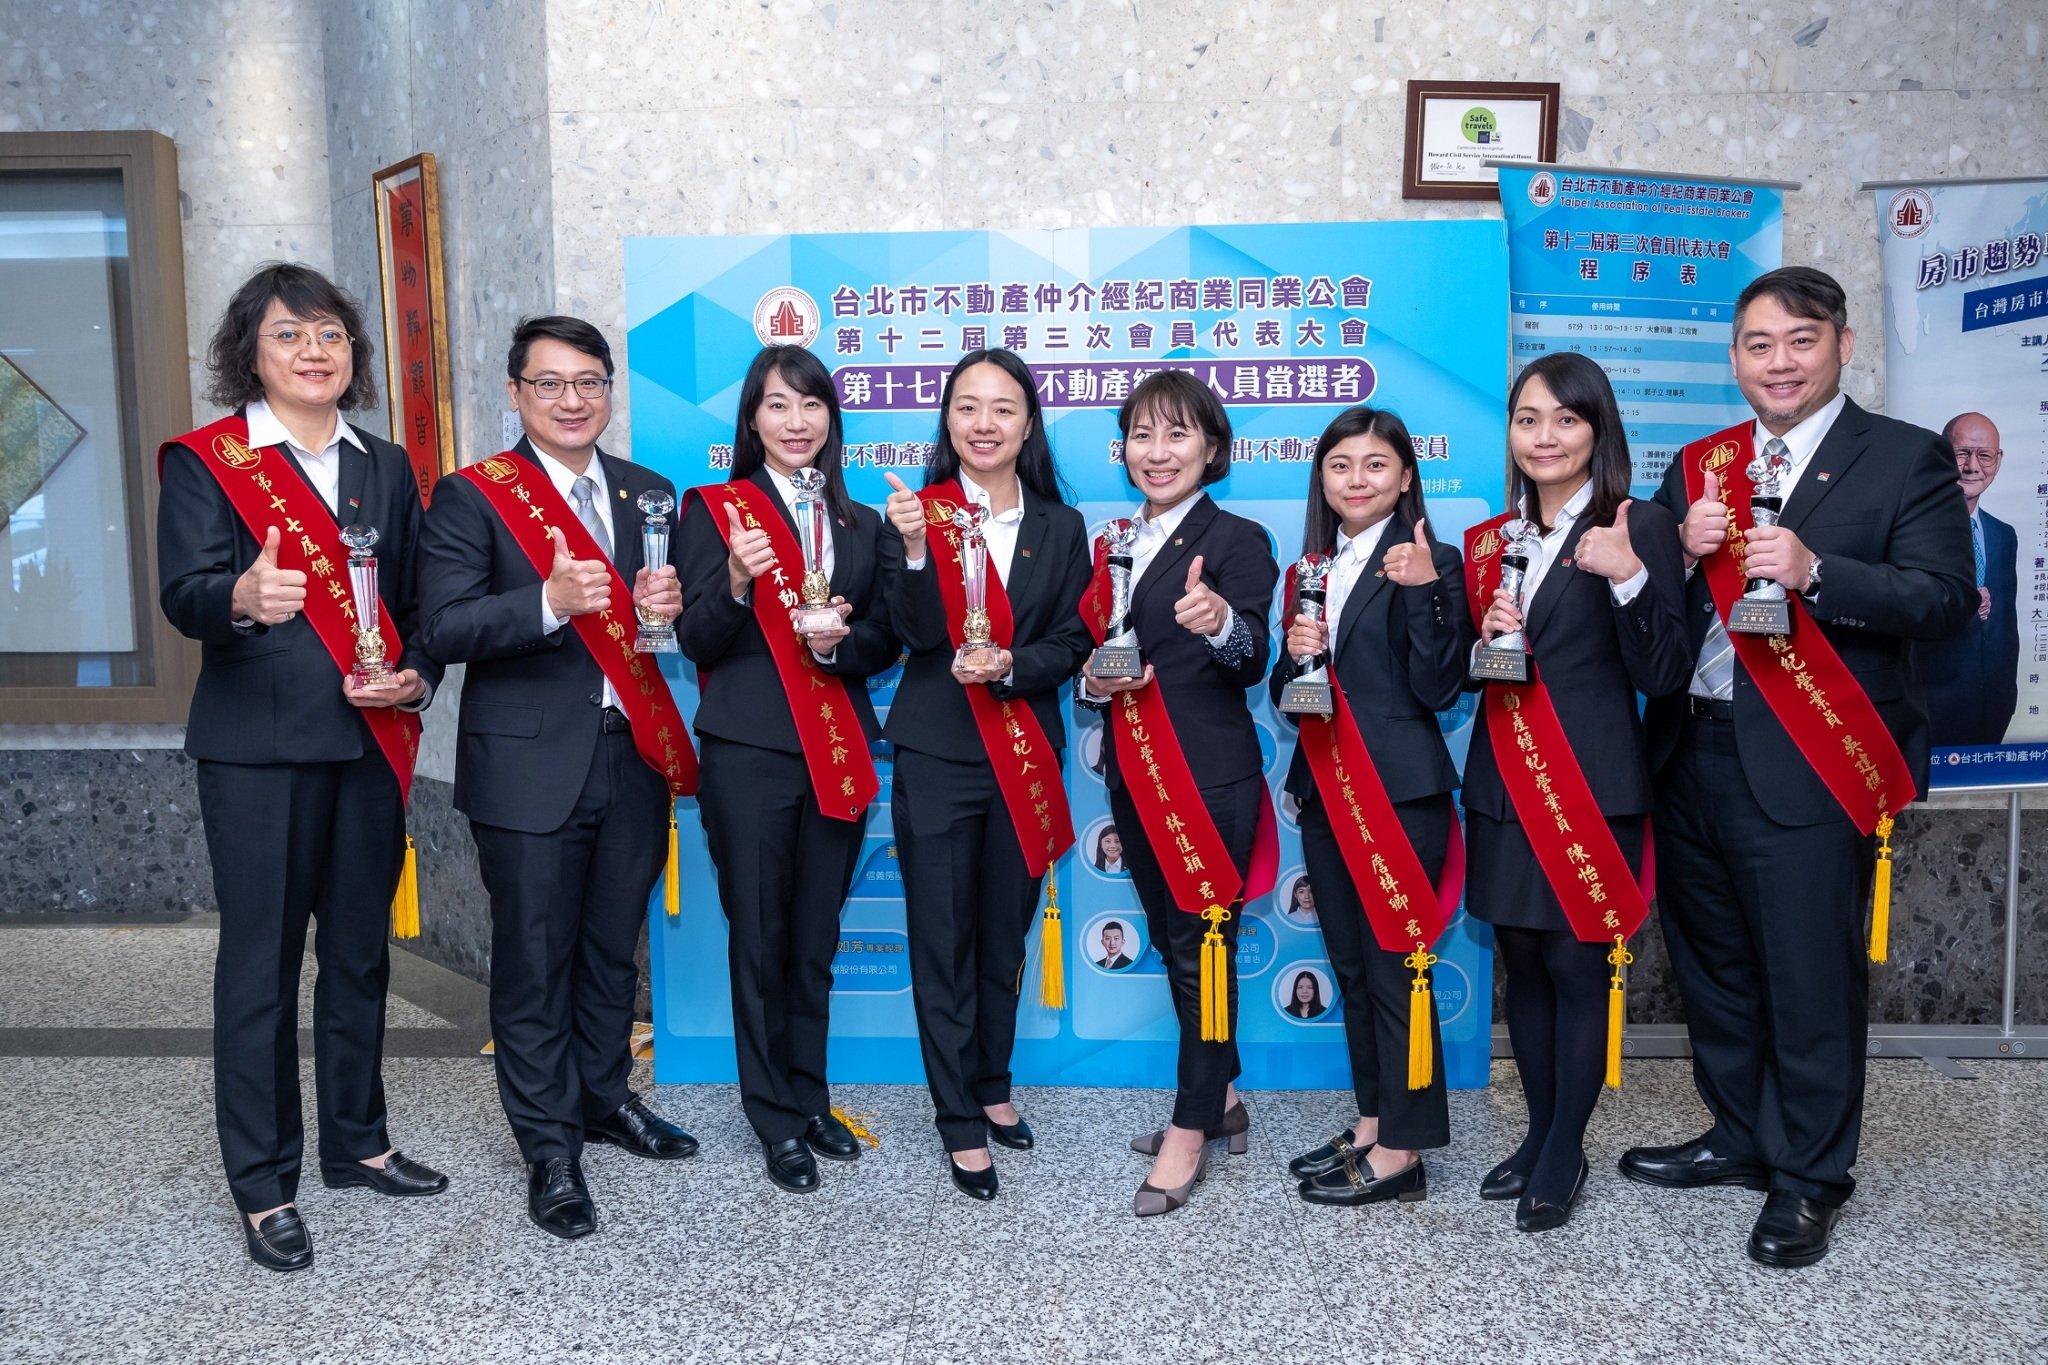 信義企業集團共8人獲台北市不動產仲介經紀商業同業公會頒發傑出不動產經紀人員獎。